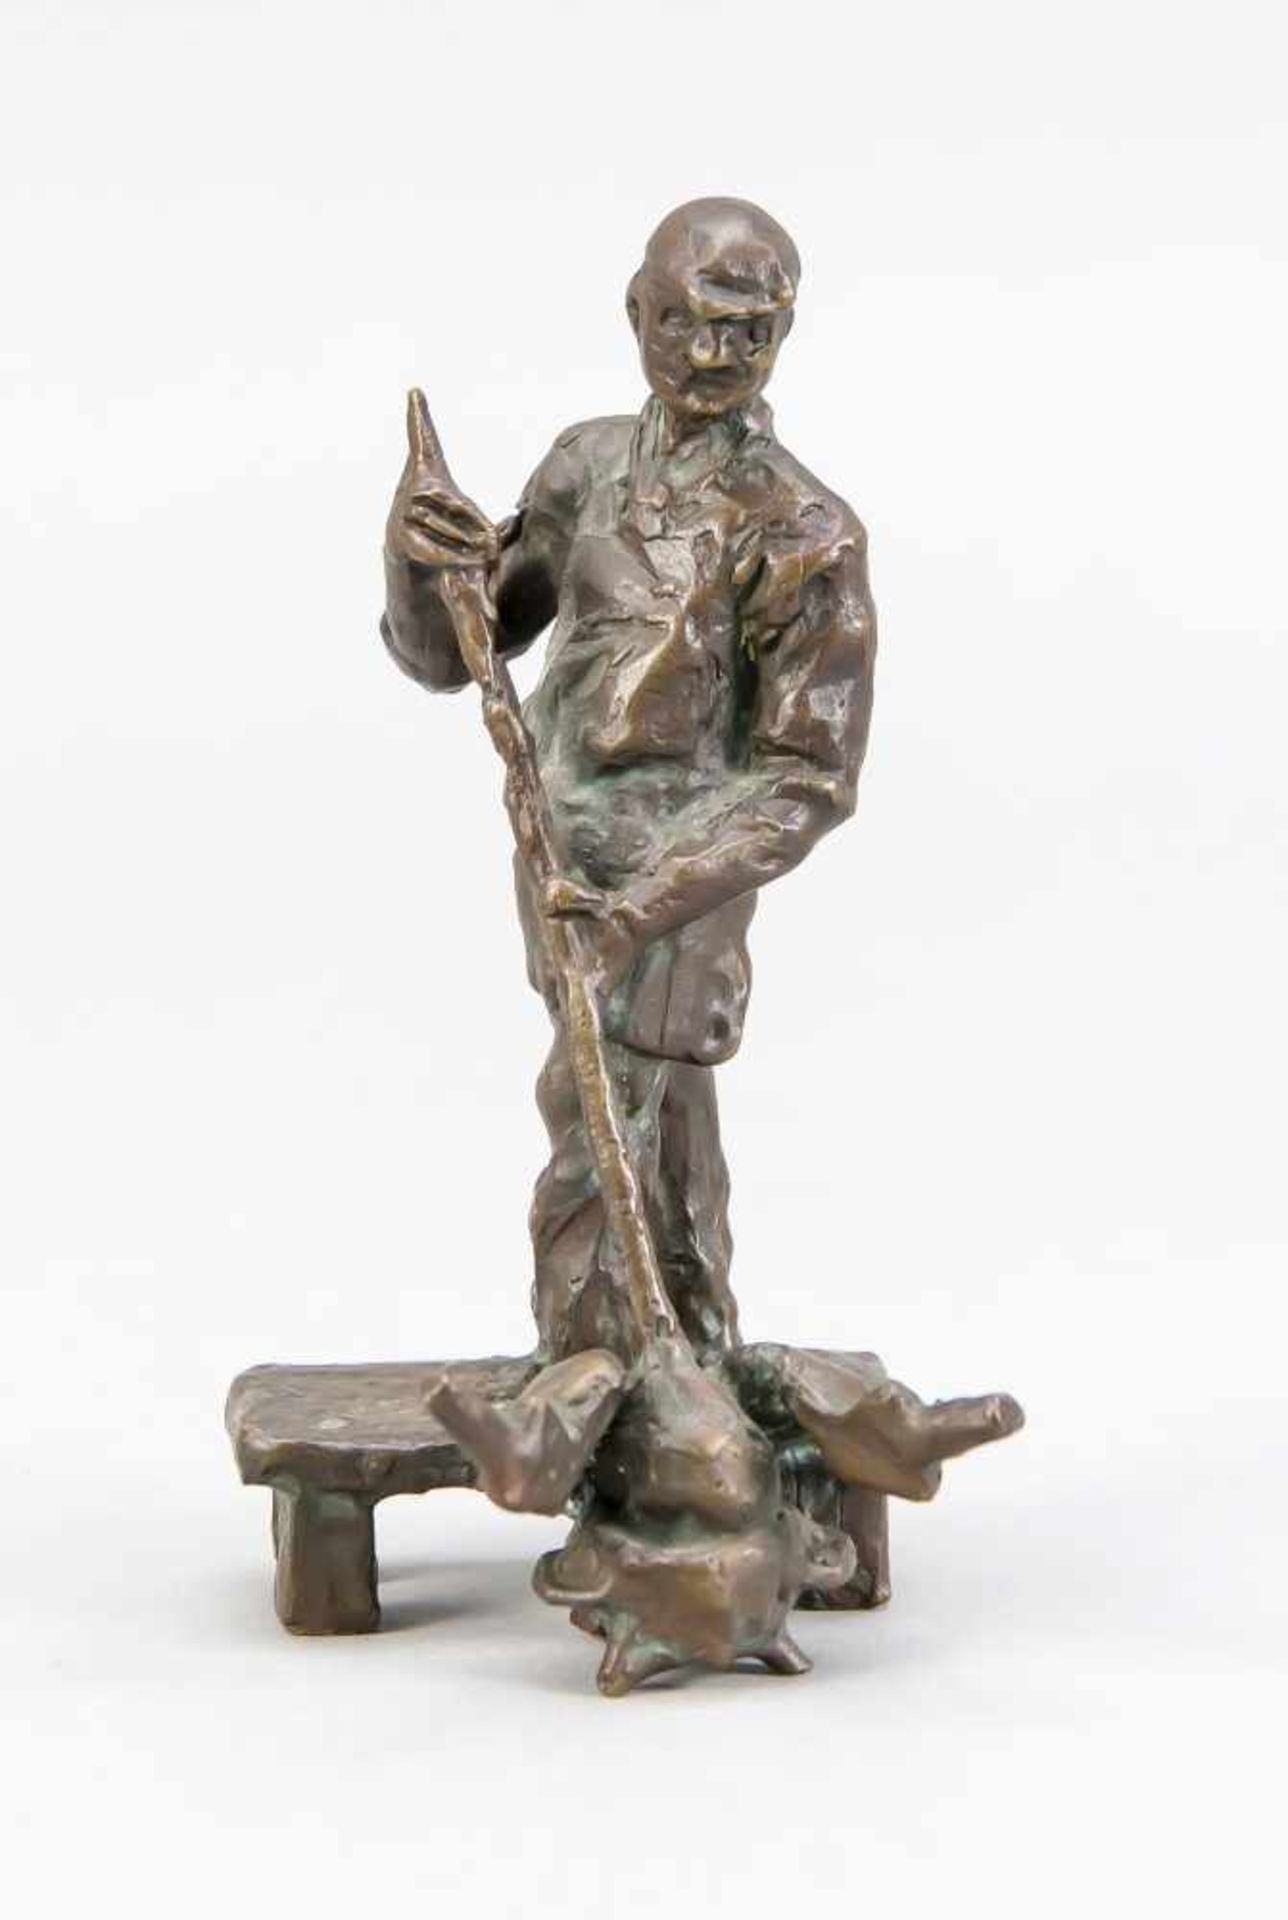 Anonymer Bildhauer um 1960, Glasbläser, braun patinierte Bronze, unsign., H. 10,5 cmAnonymous